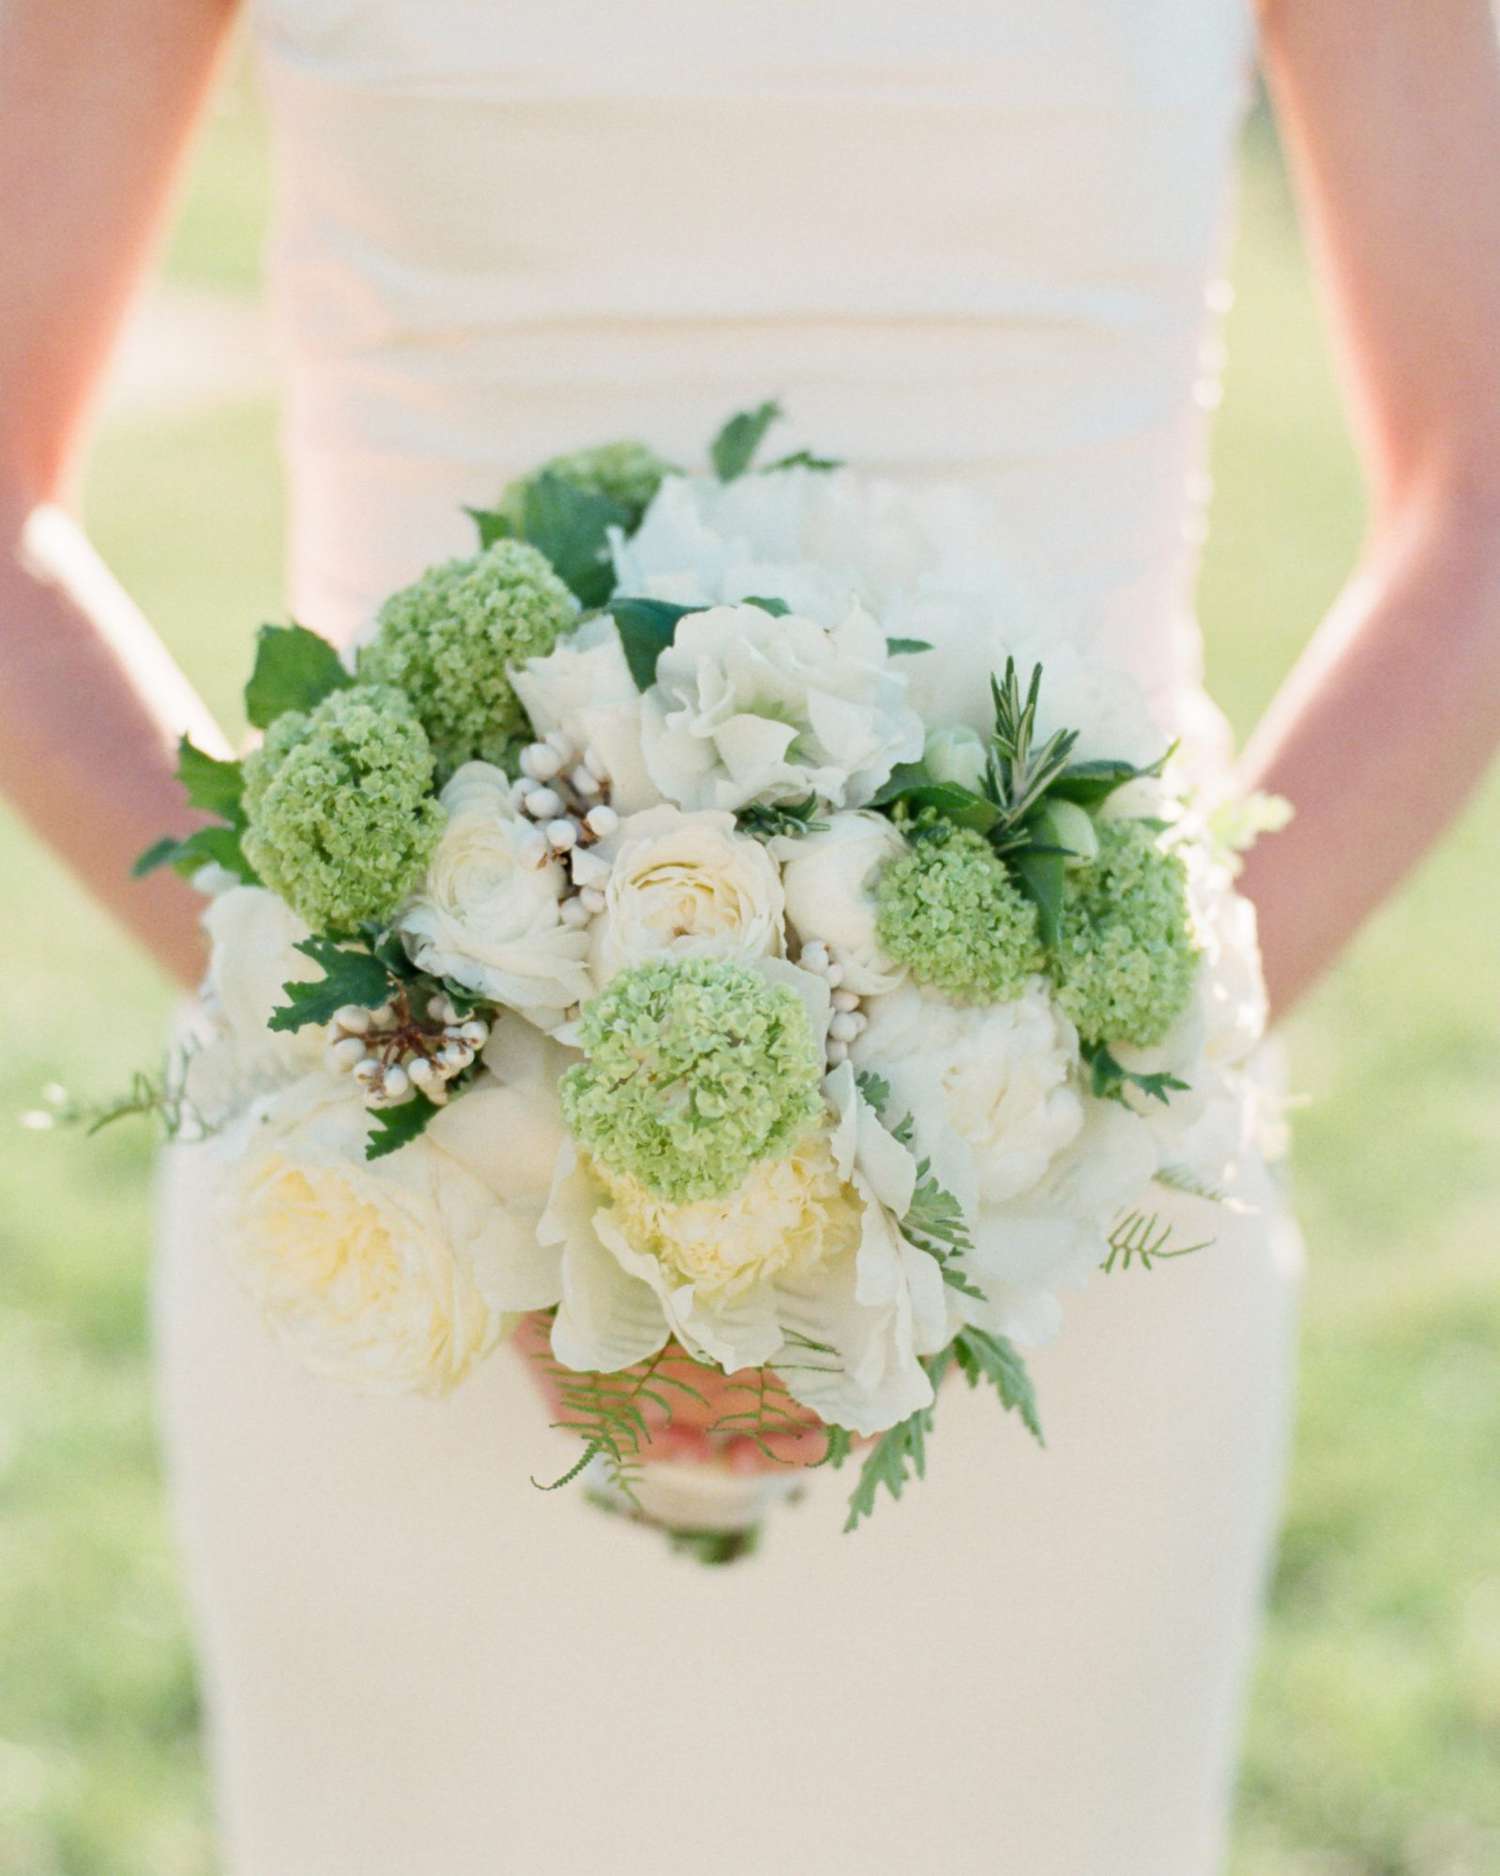 The Lush Bridal Bouquet